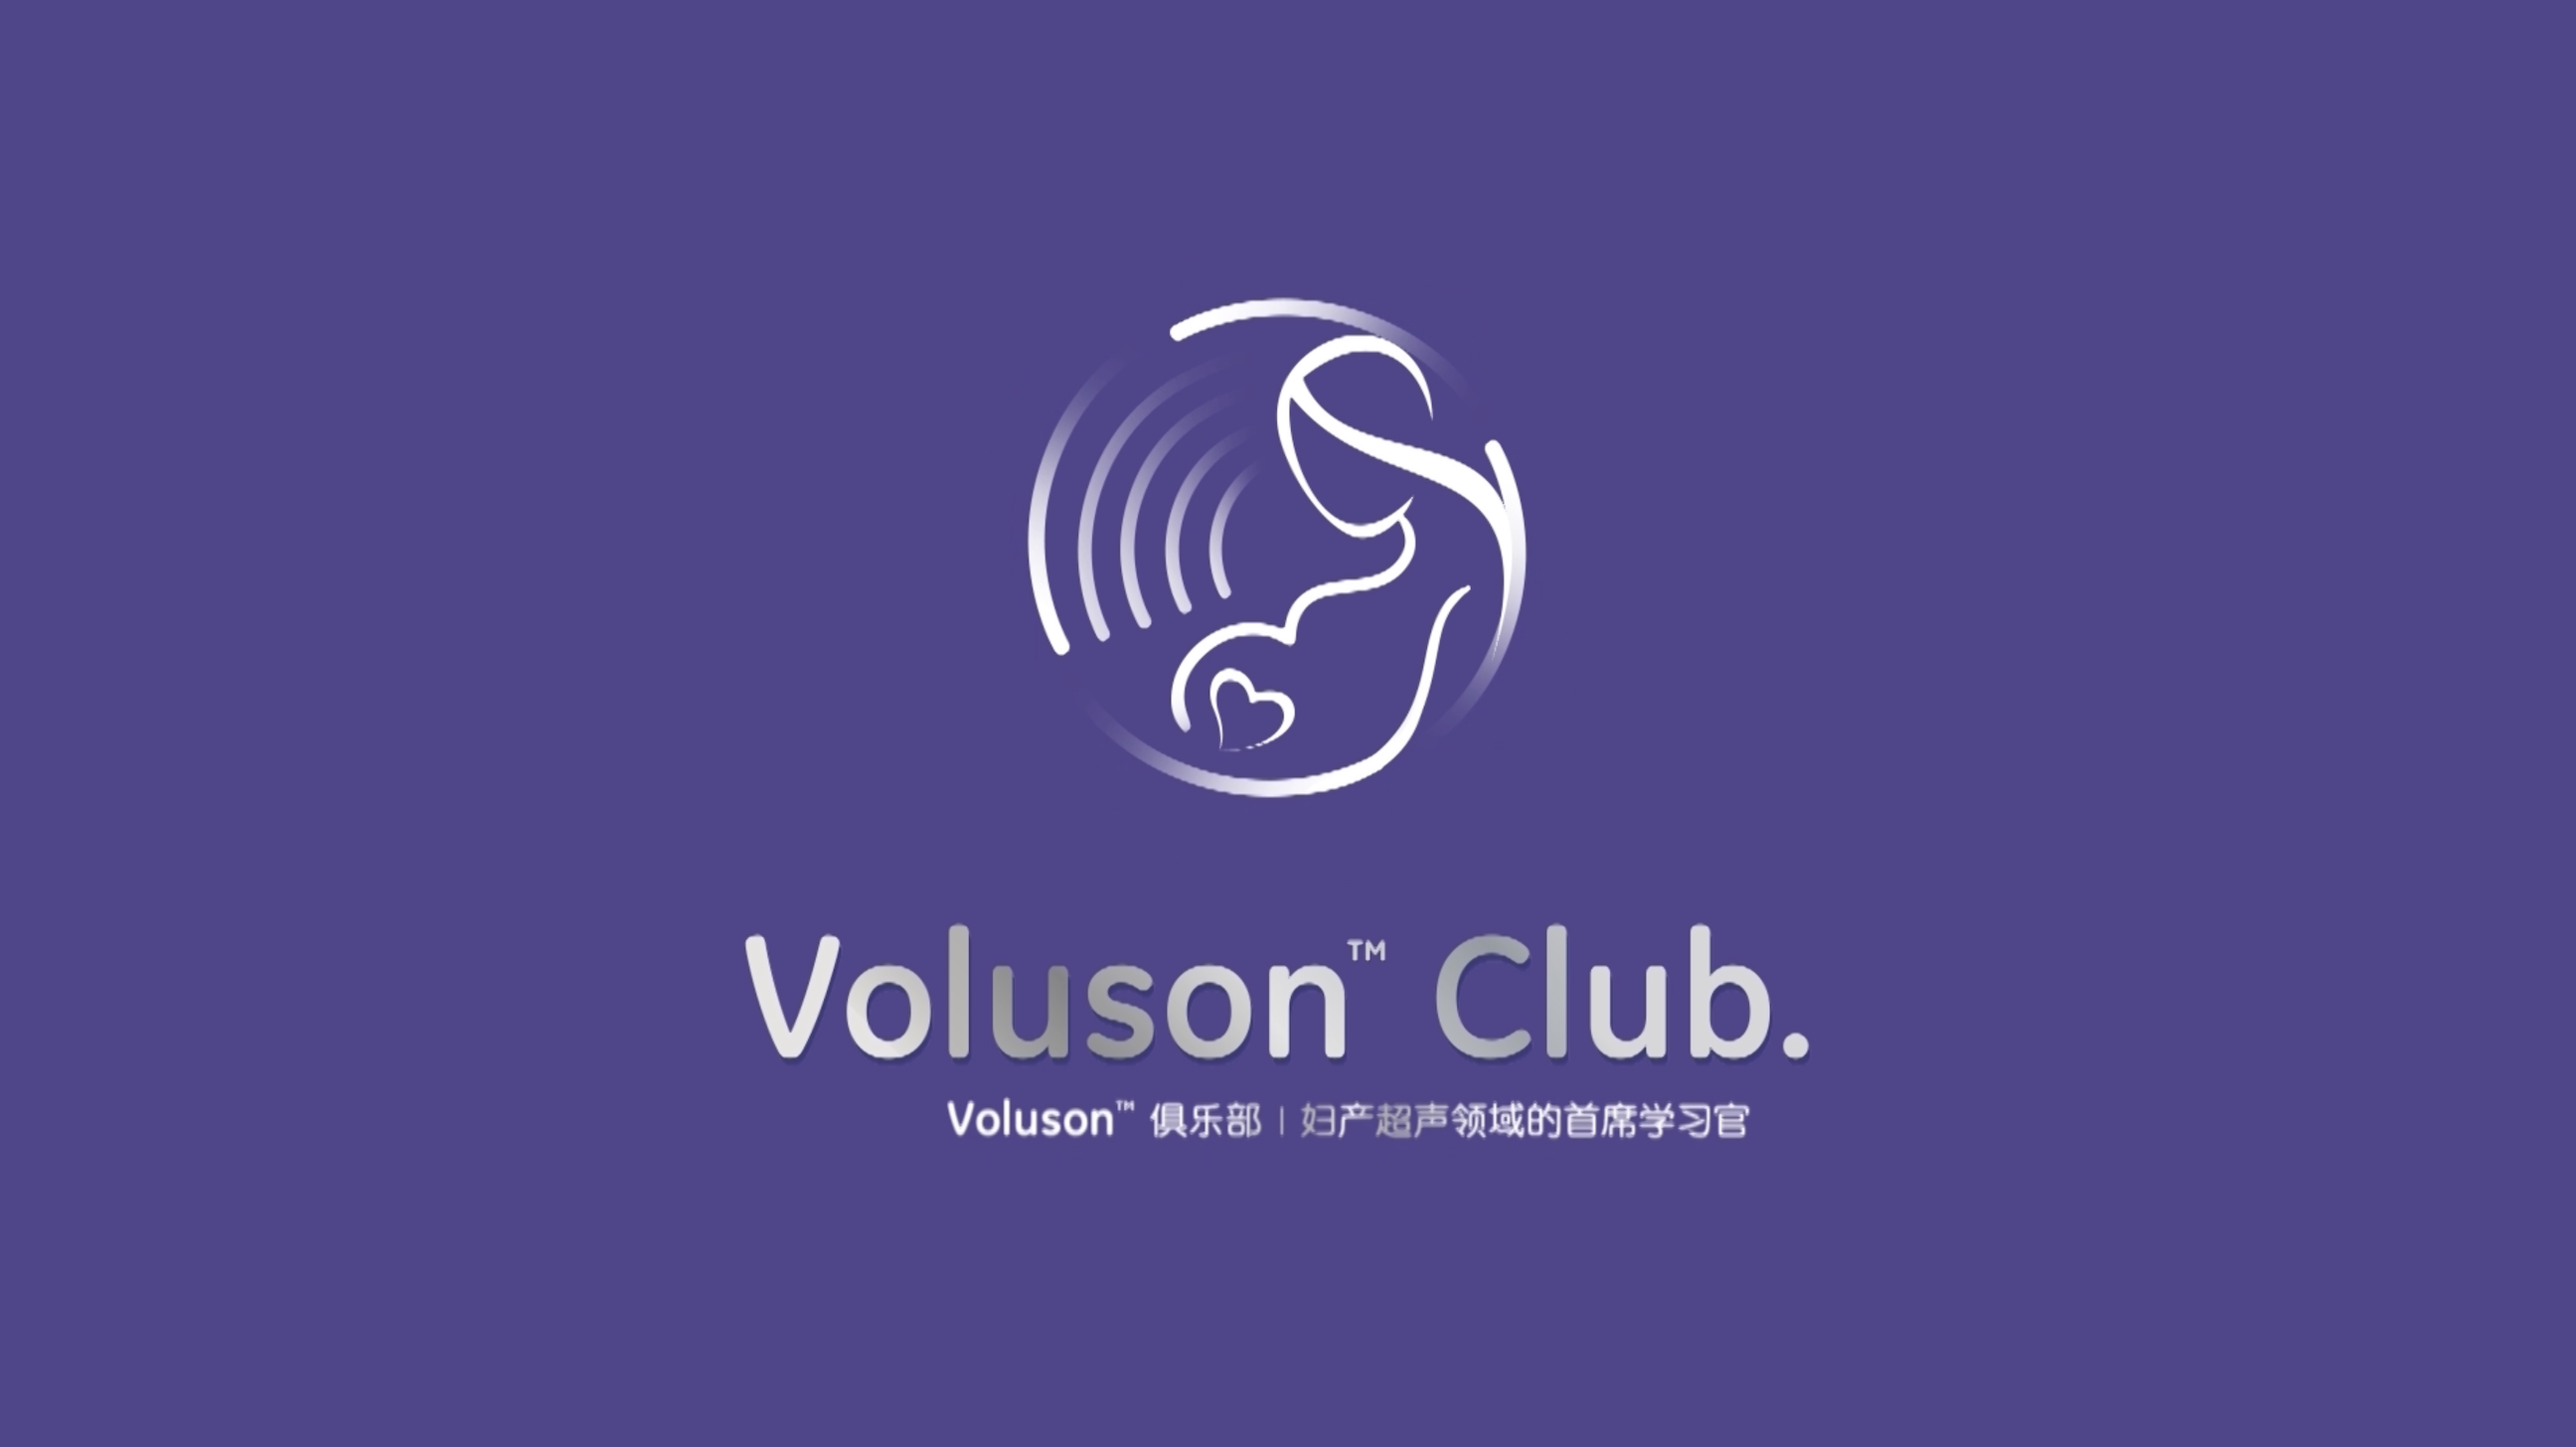 【Voluson俱乐部】彩色多普勒、二维立体血流Radiantflow™和超低速血流SlowflowHD